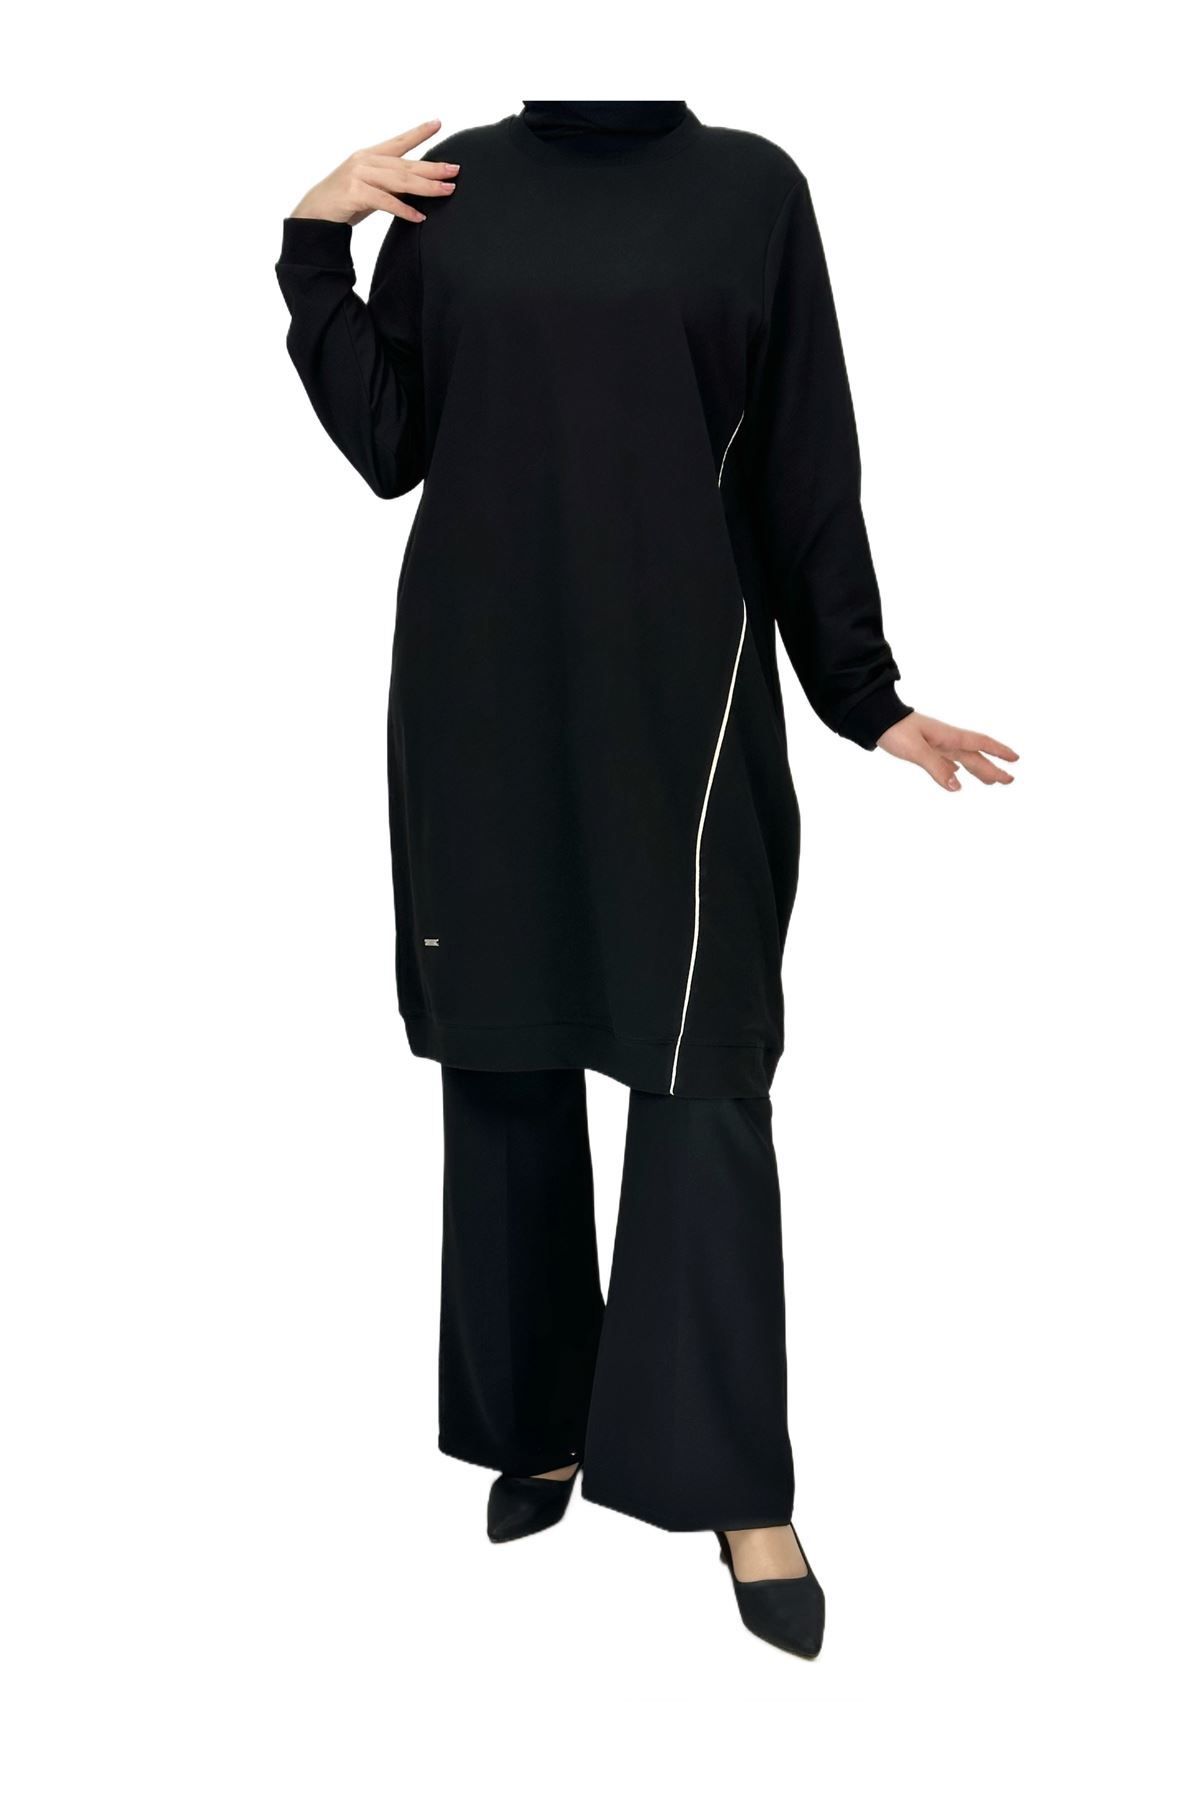 ottoman wear OTW7088 Biyeli Uzun Yandan Fermuarlı Tunik Siyah